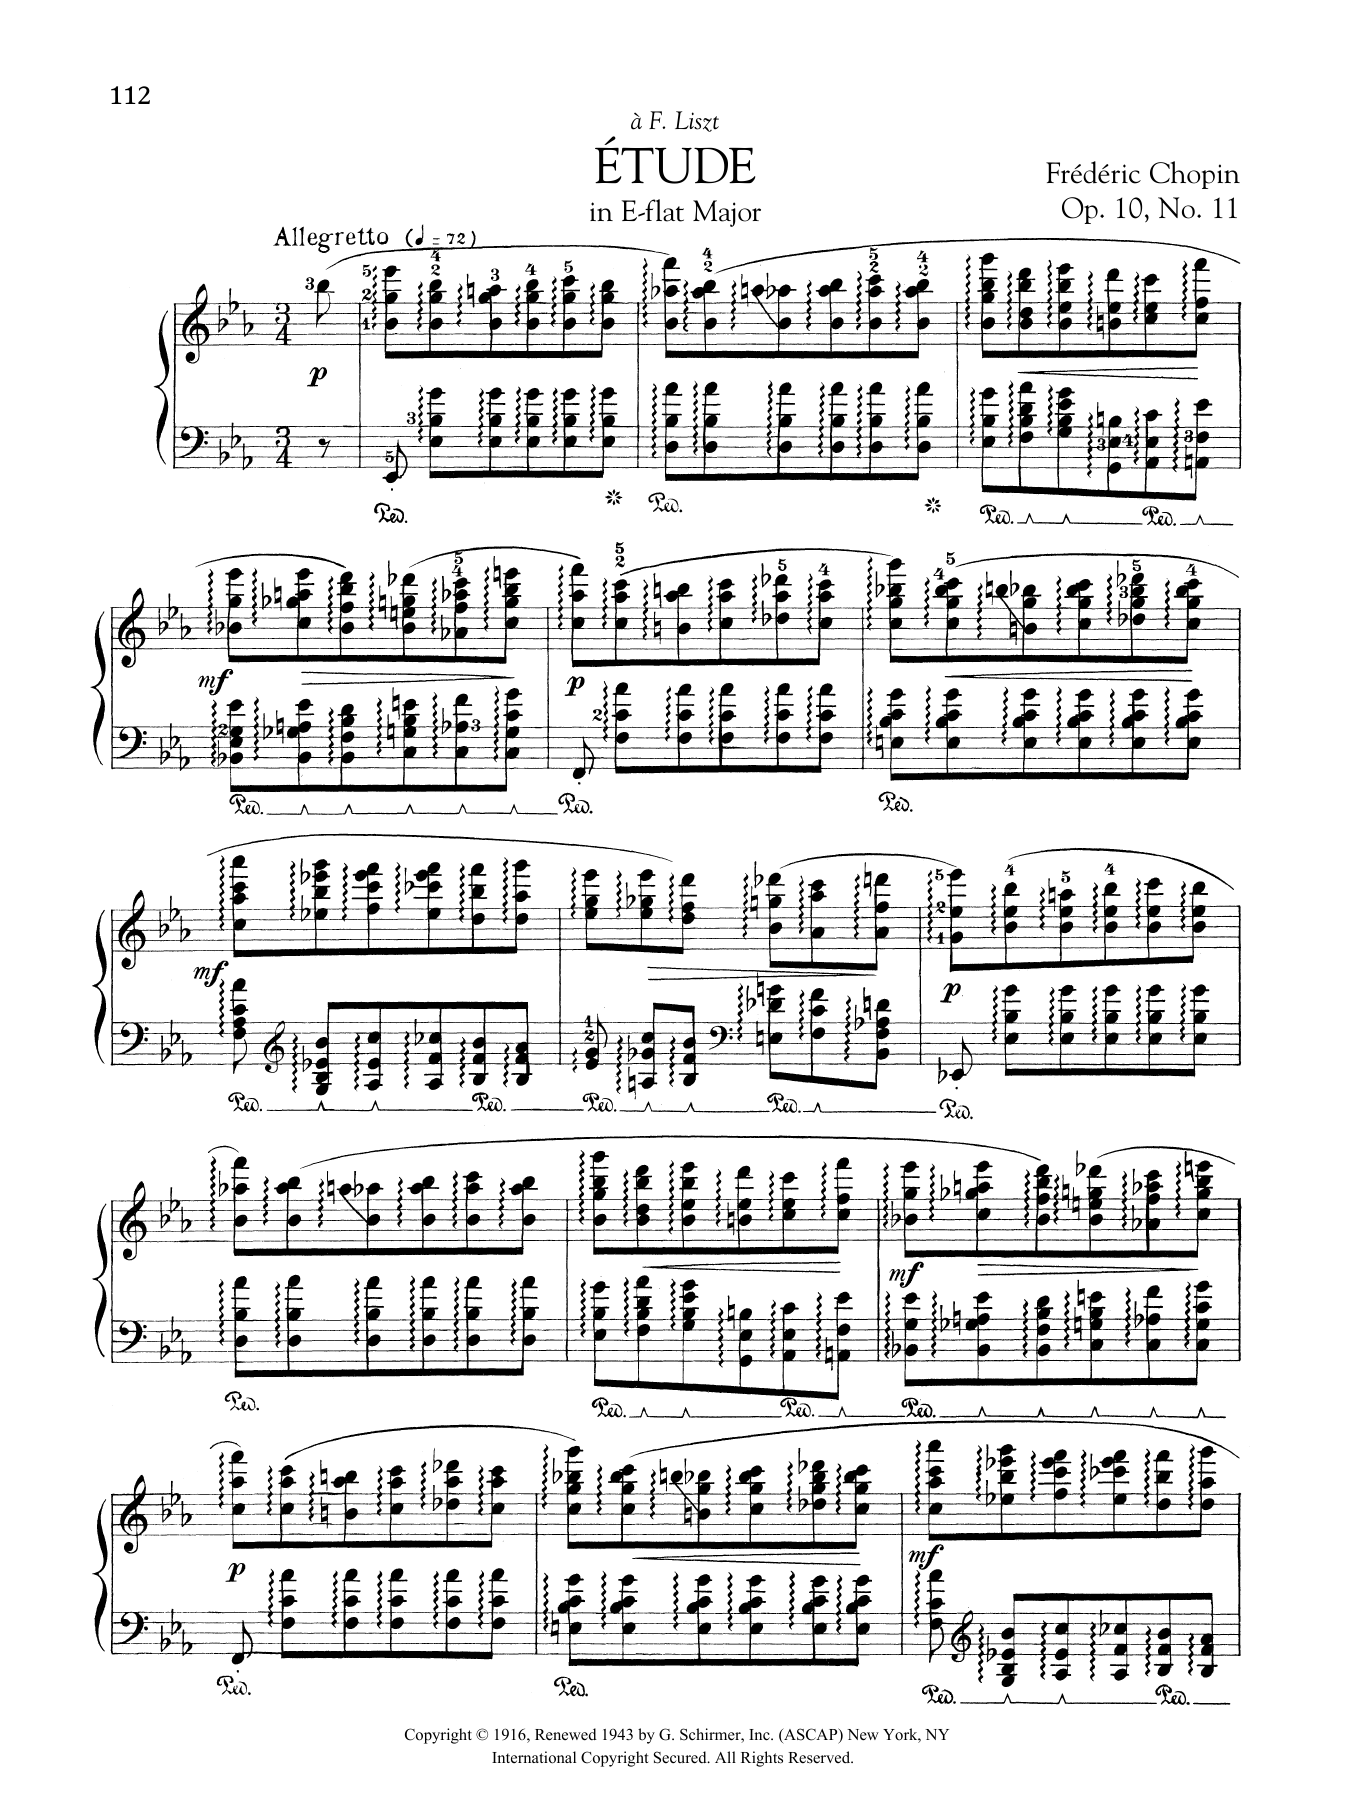 Download Frederic Chopin Etude in E-flat Major, Op. 10, No. 11 Sheet Music